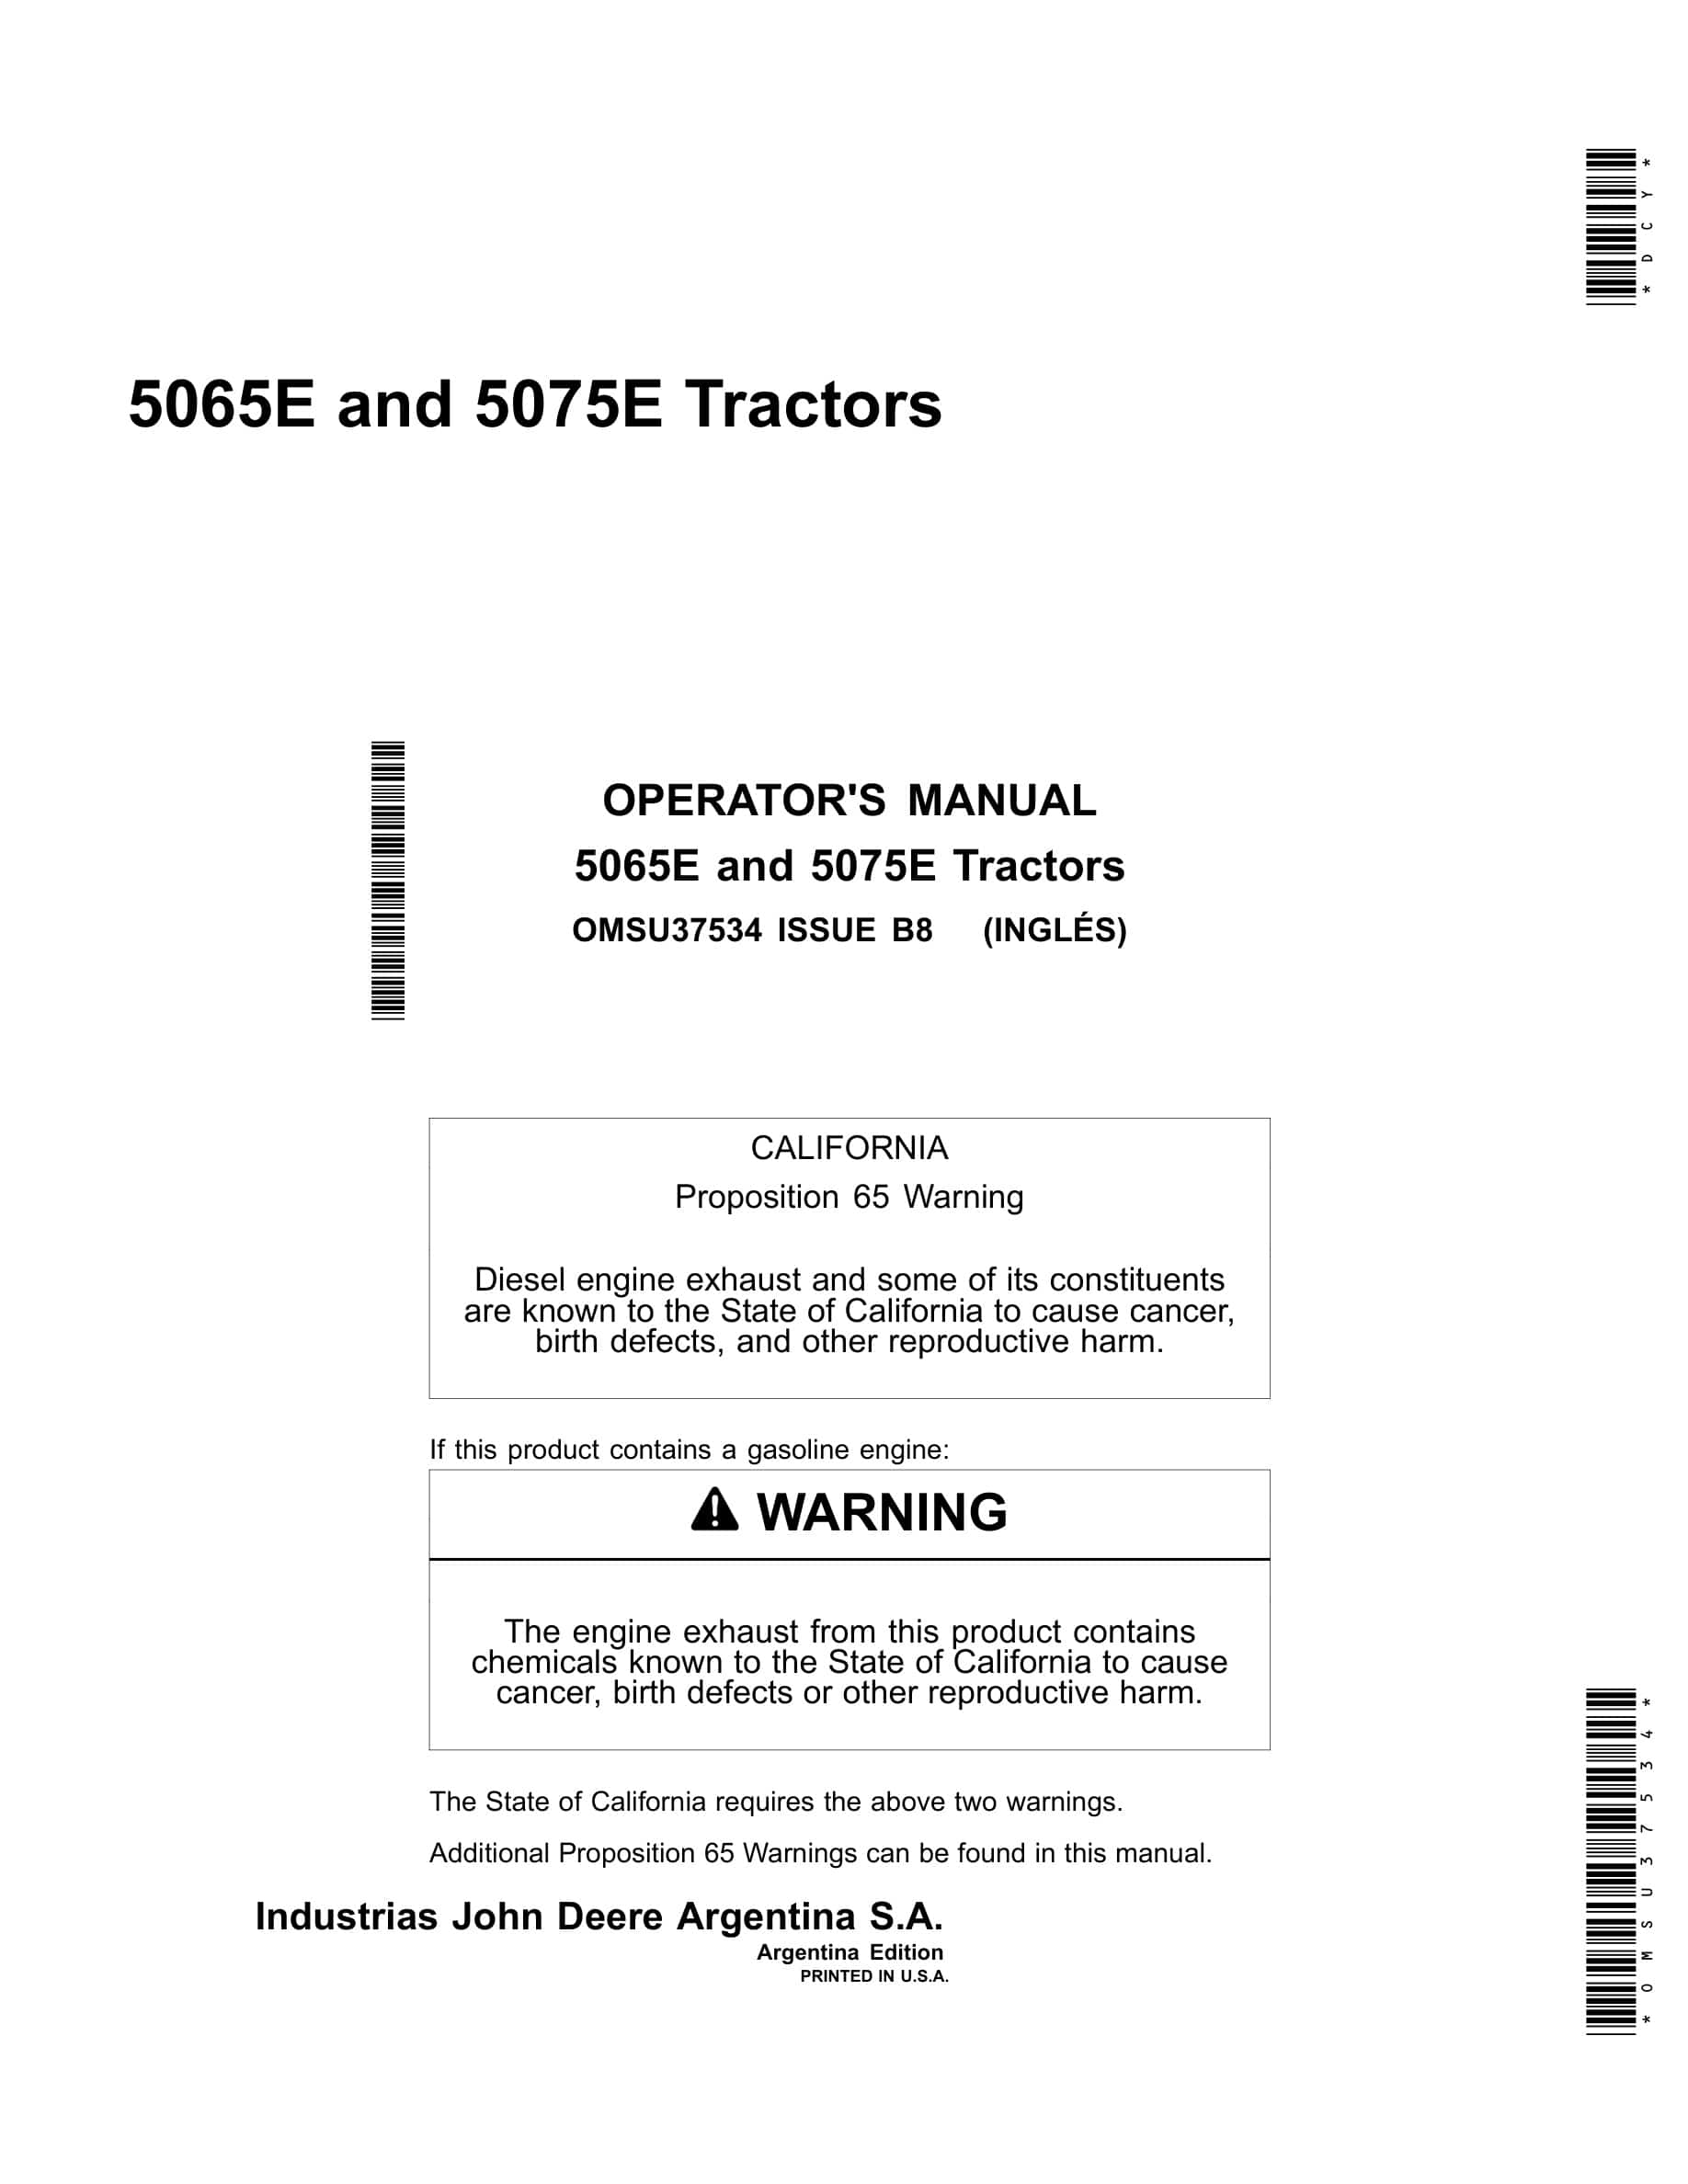 John Deere 5065e And 5075e Tractors Operator Manuals OMSU37534-1